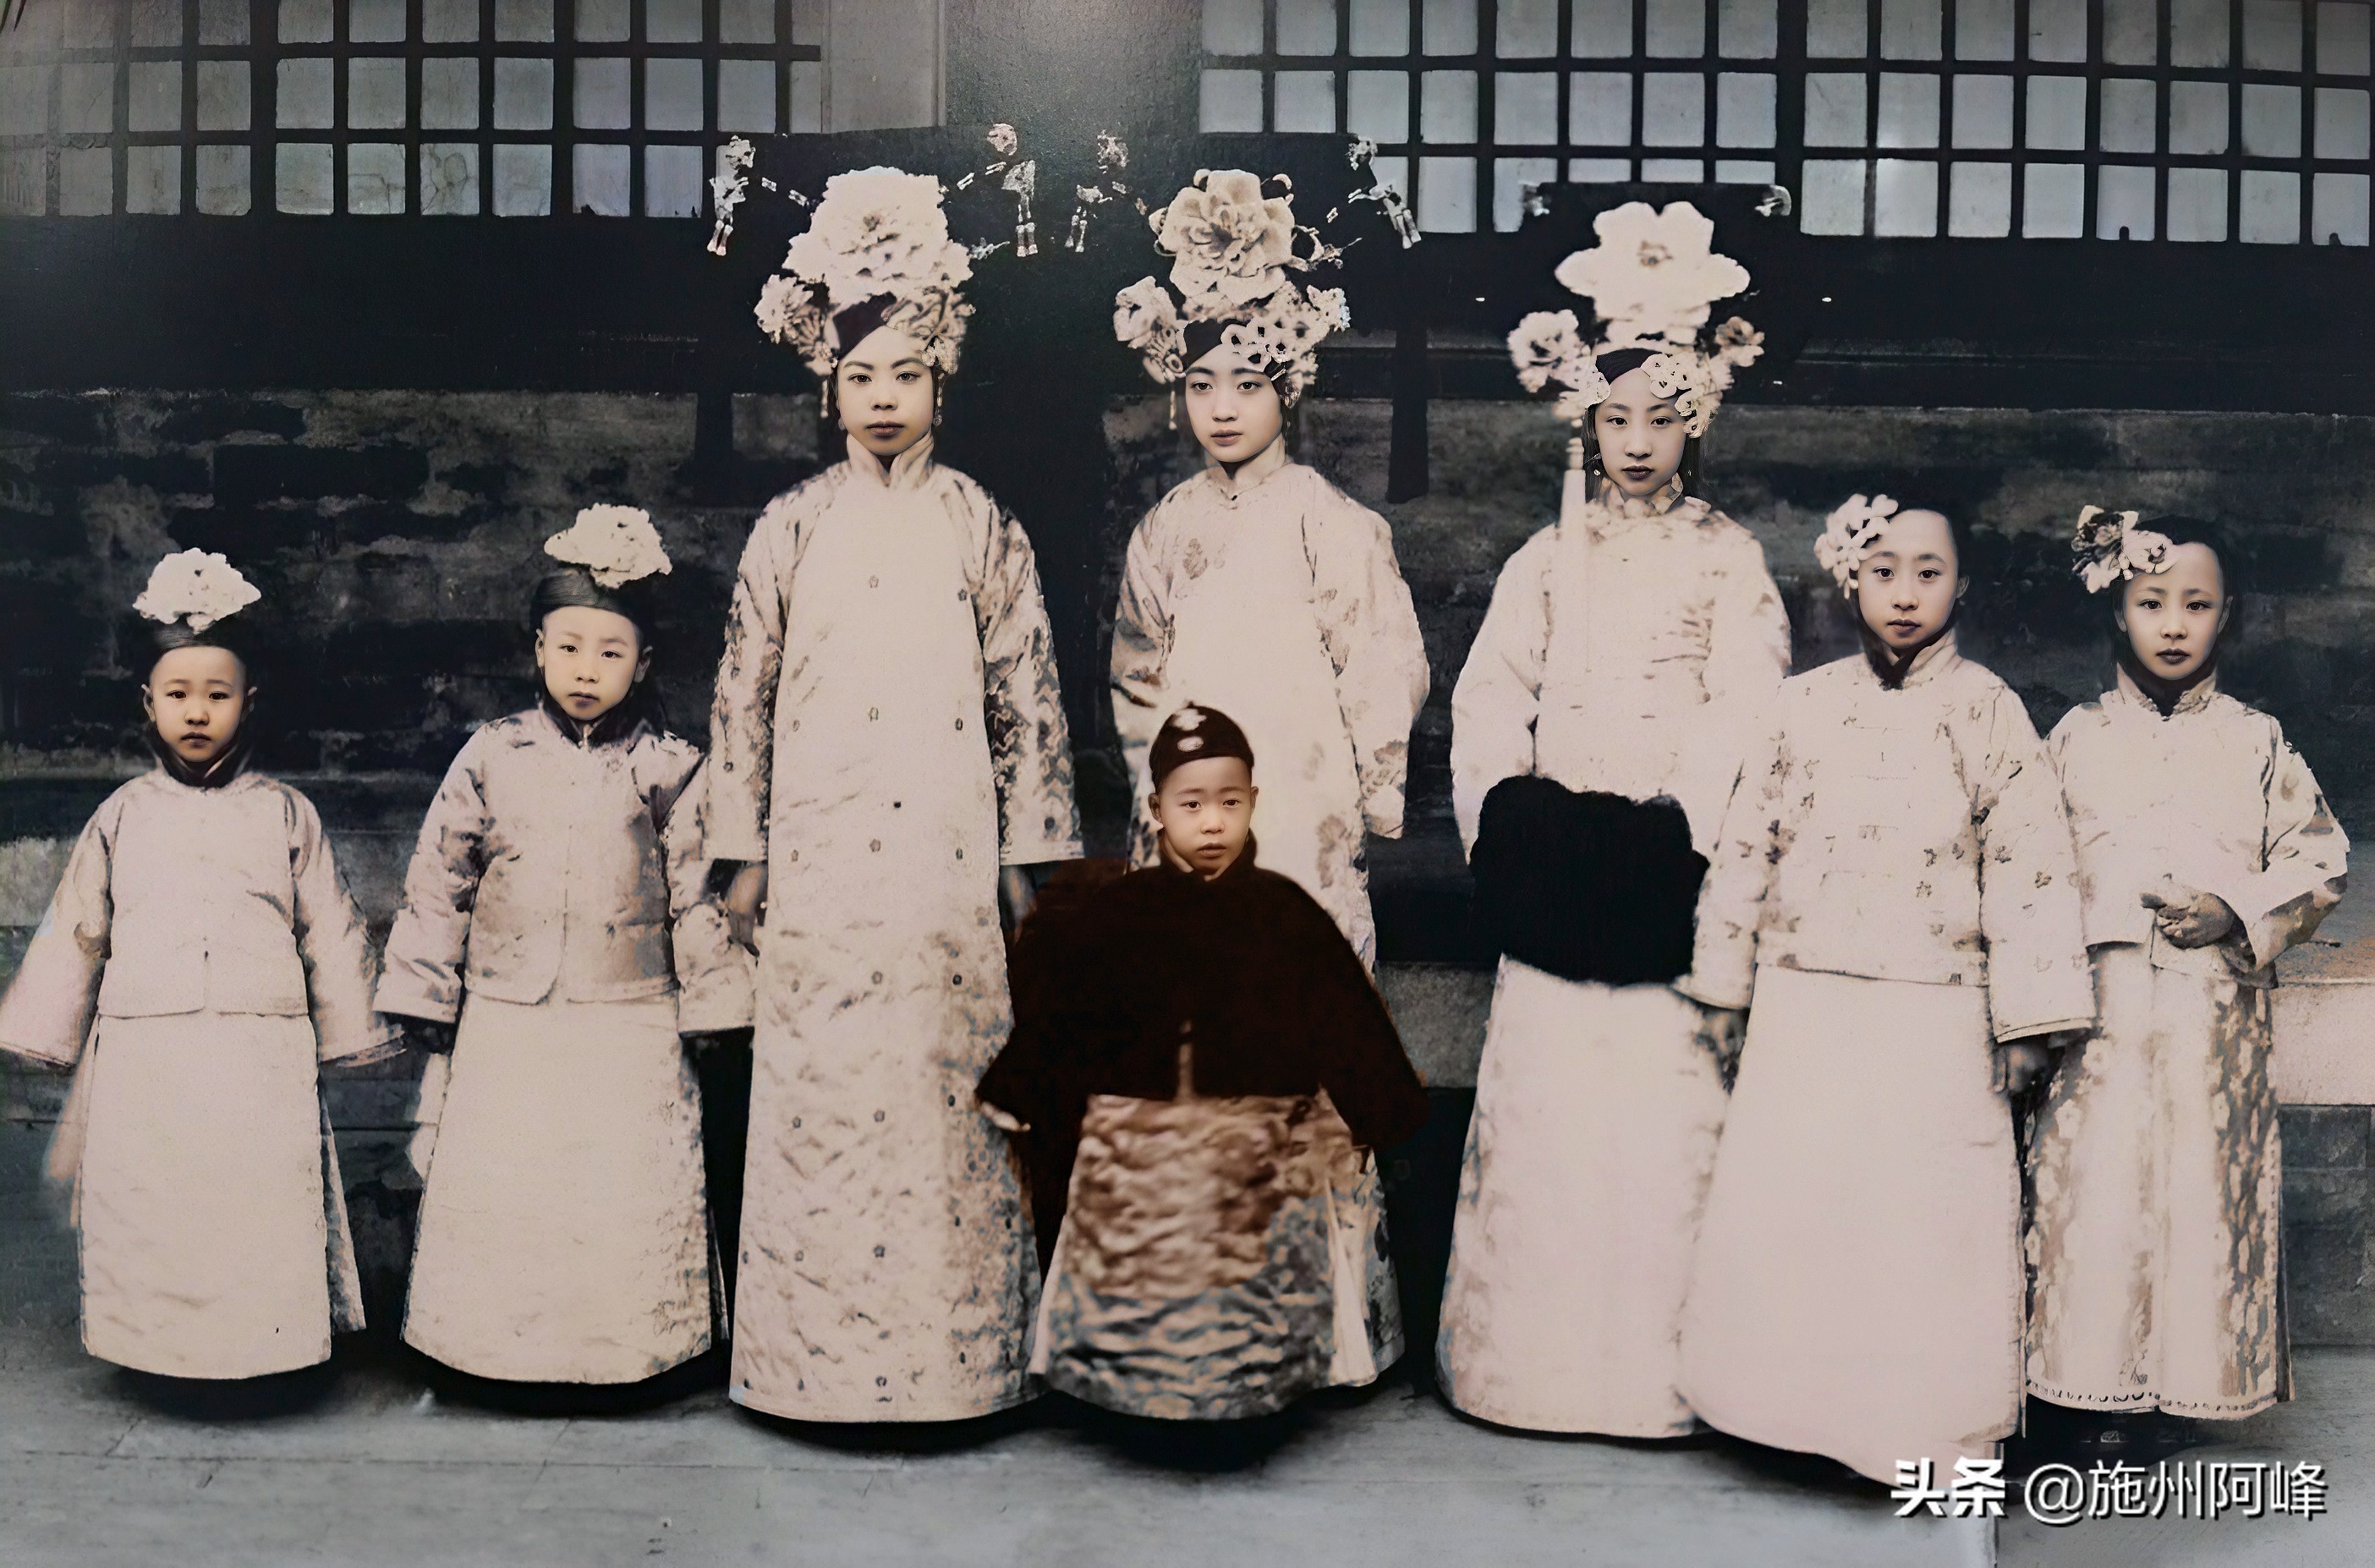 清朝虽然已经灭亡了一百多年，但是却留下了这么多的历史照片